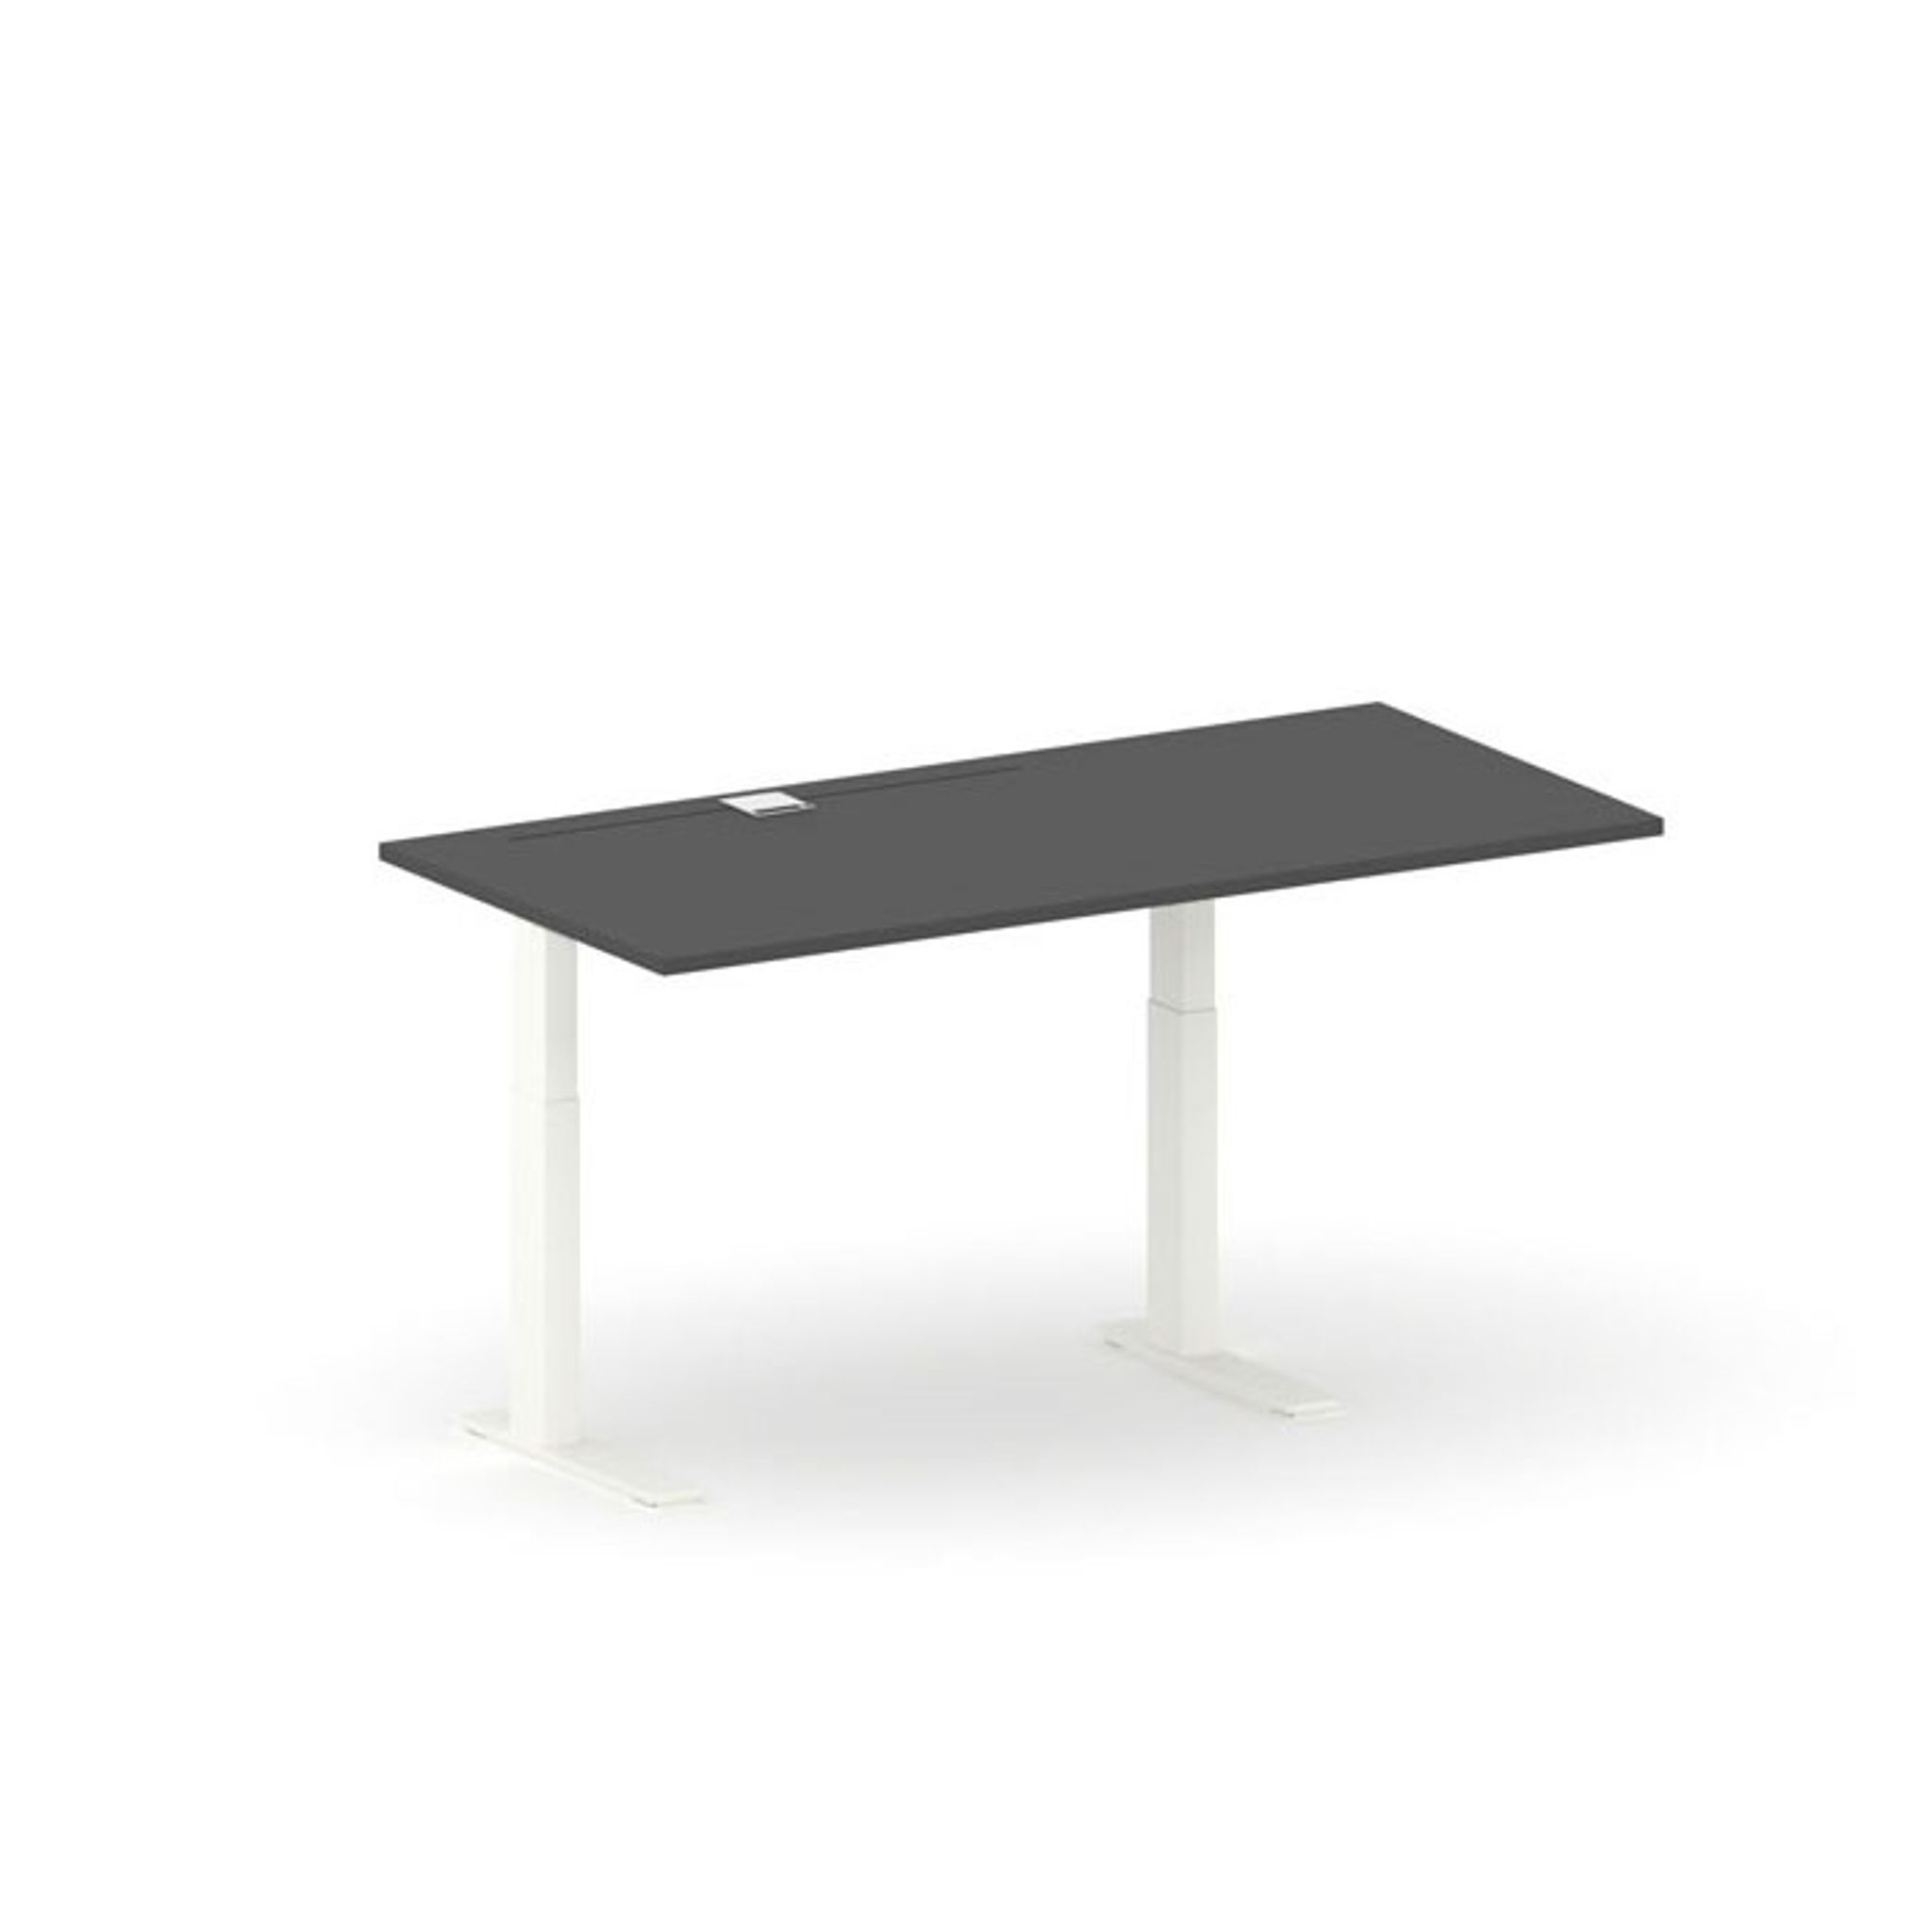 Výškově nastavitelný pracovní stůl FUTURE, 1700 x 800 x 745-1215 mm, bez paravanu, bílá/grafit